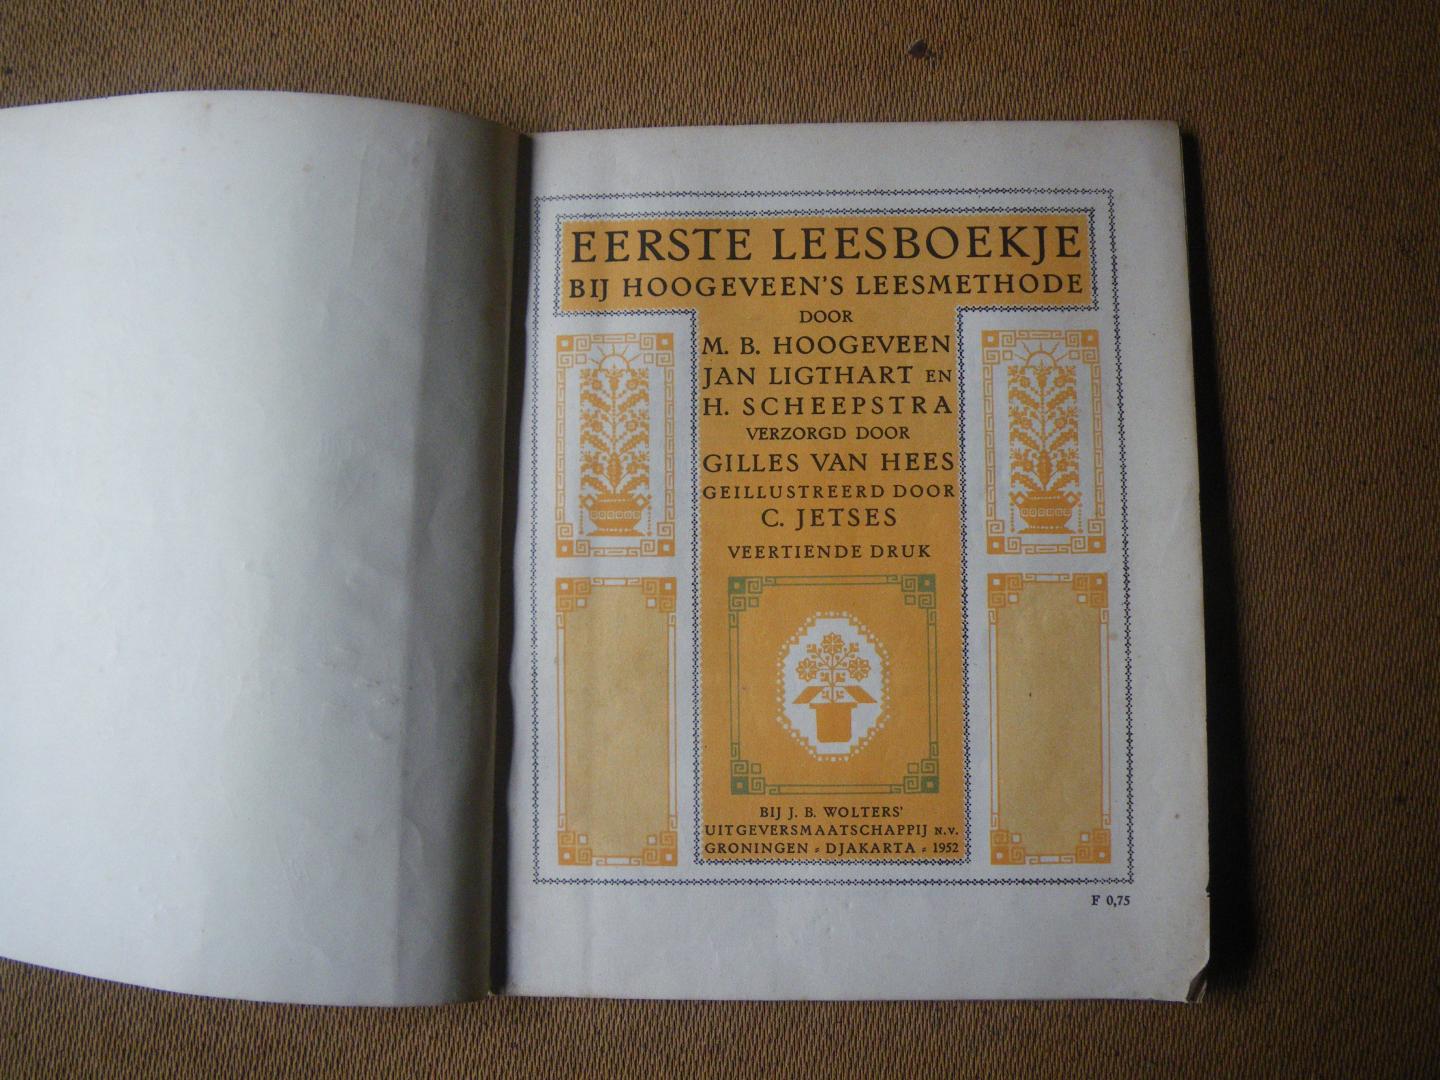 Hoogeveen, M.B. Ligthart, Jan. Scheepstra, H. - Eerste leesboekje (geill. door C. Jetses)